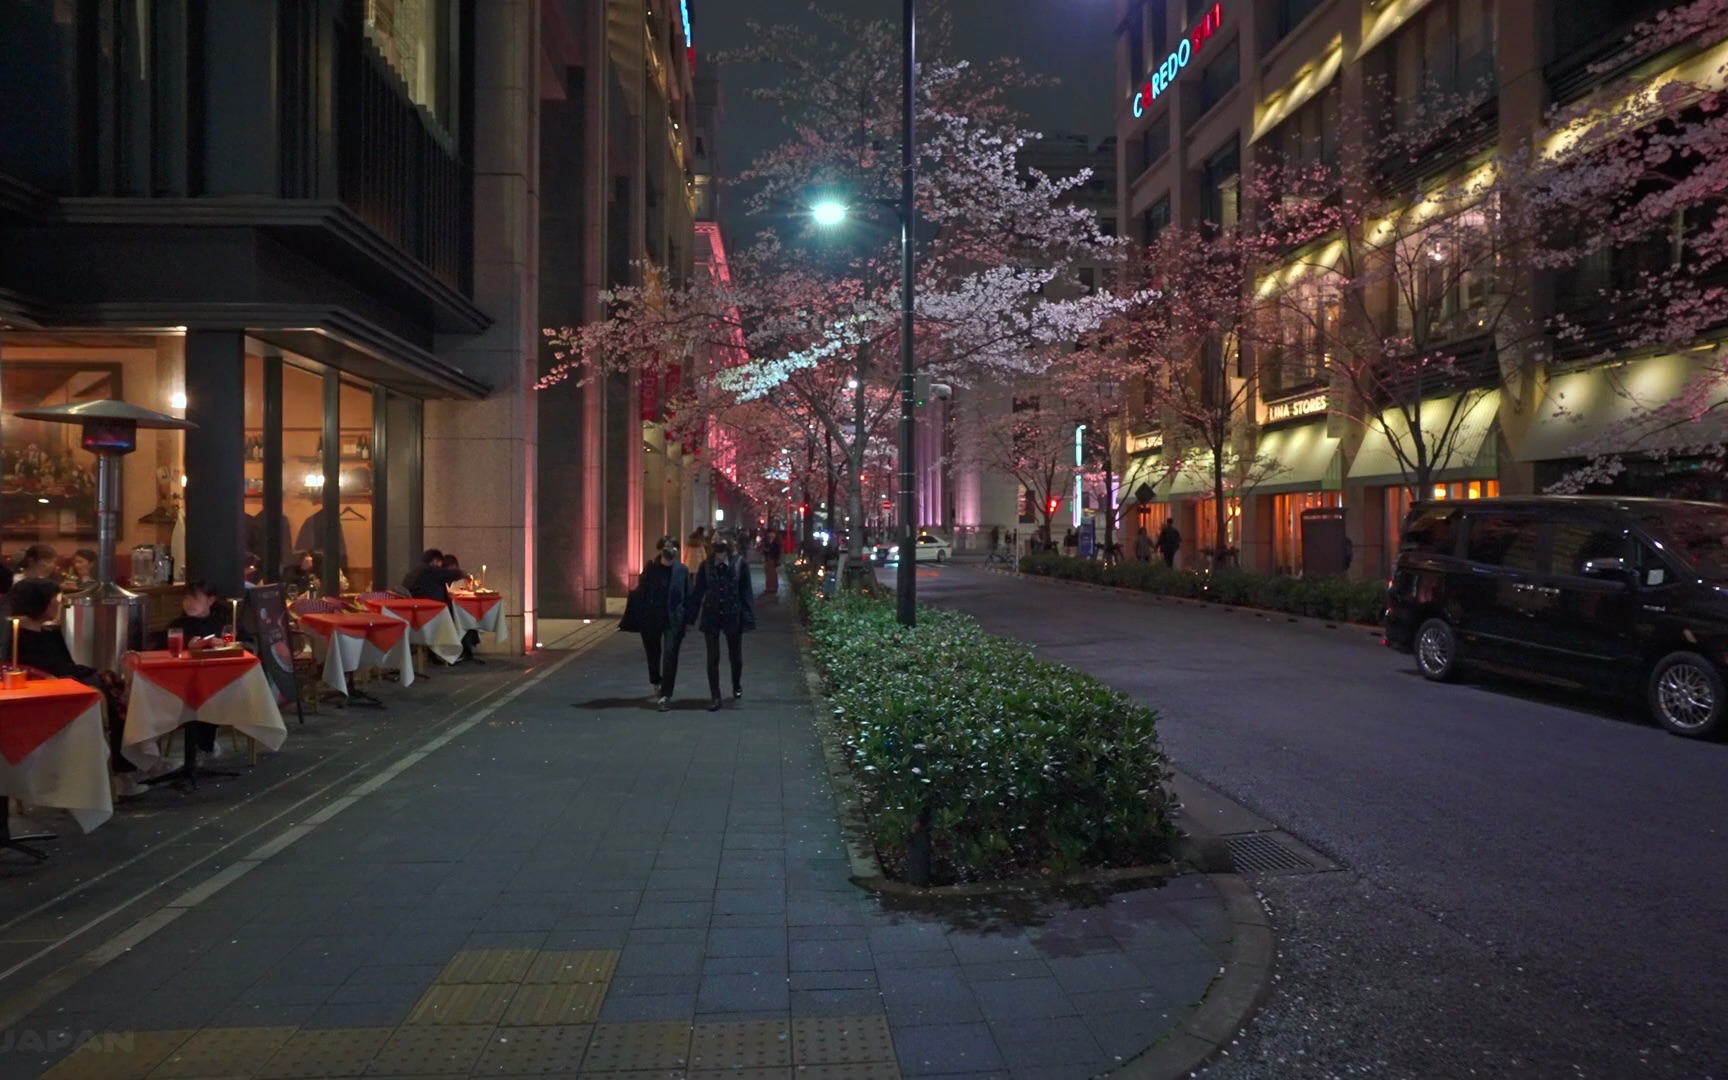 【日本漫步】樱花与路灯相映,感受东京夜晚城市氛围